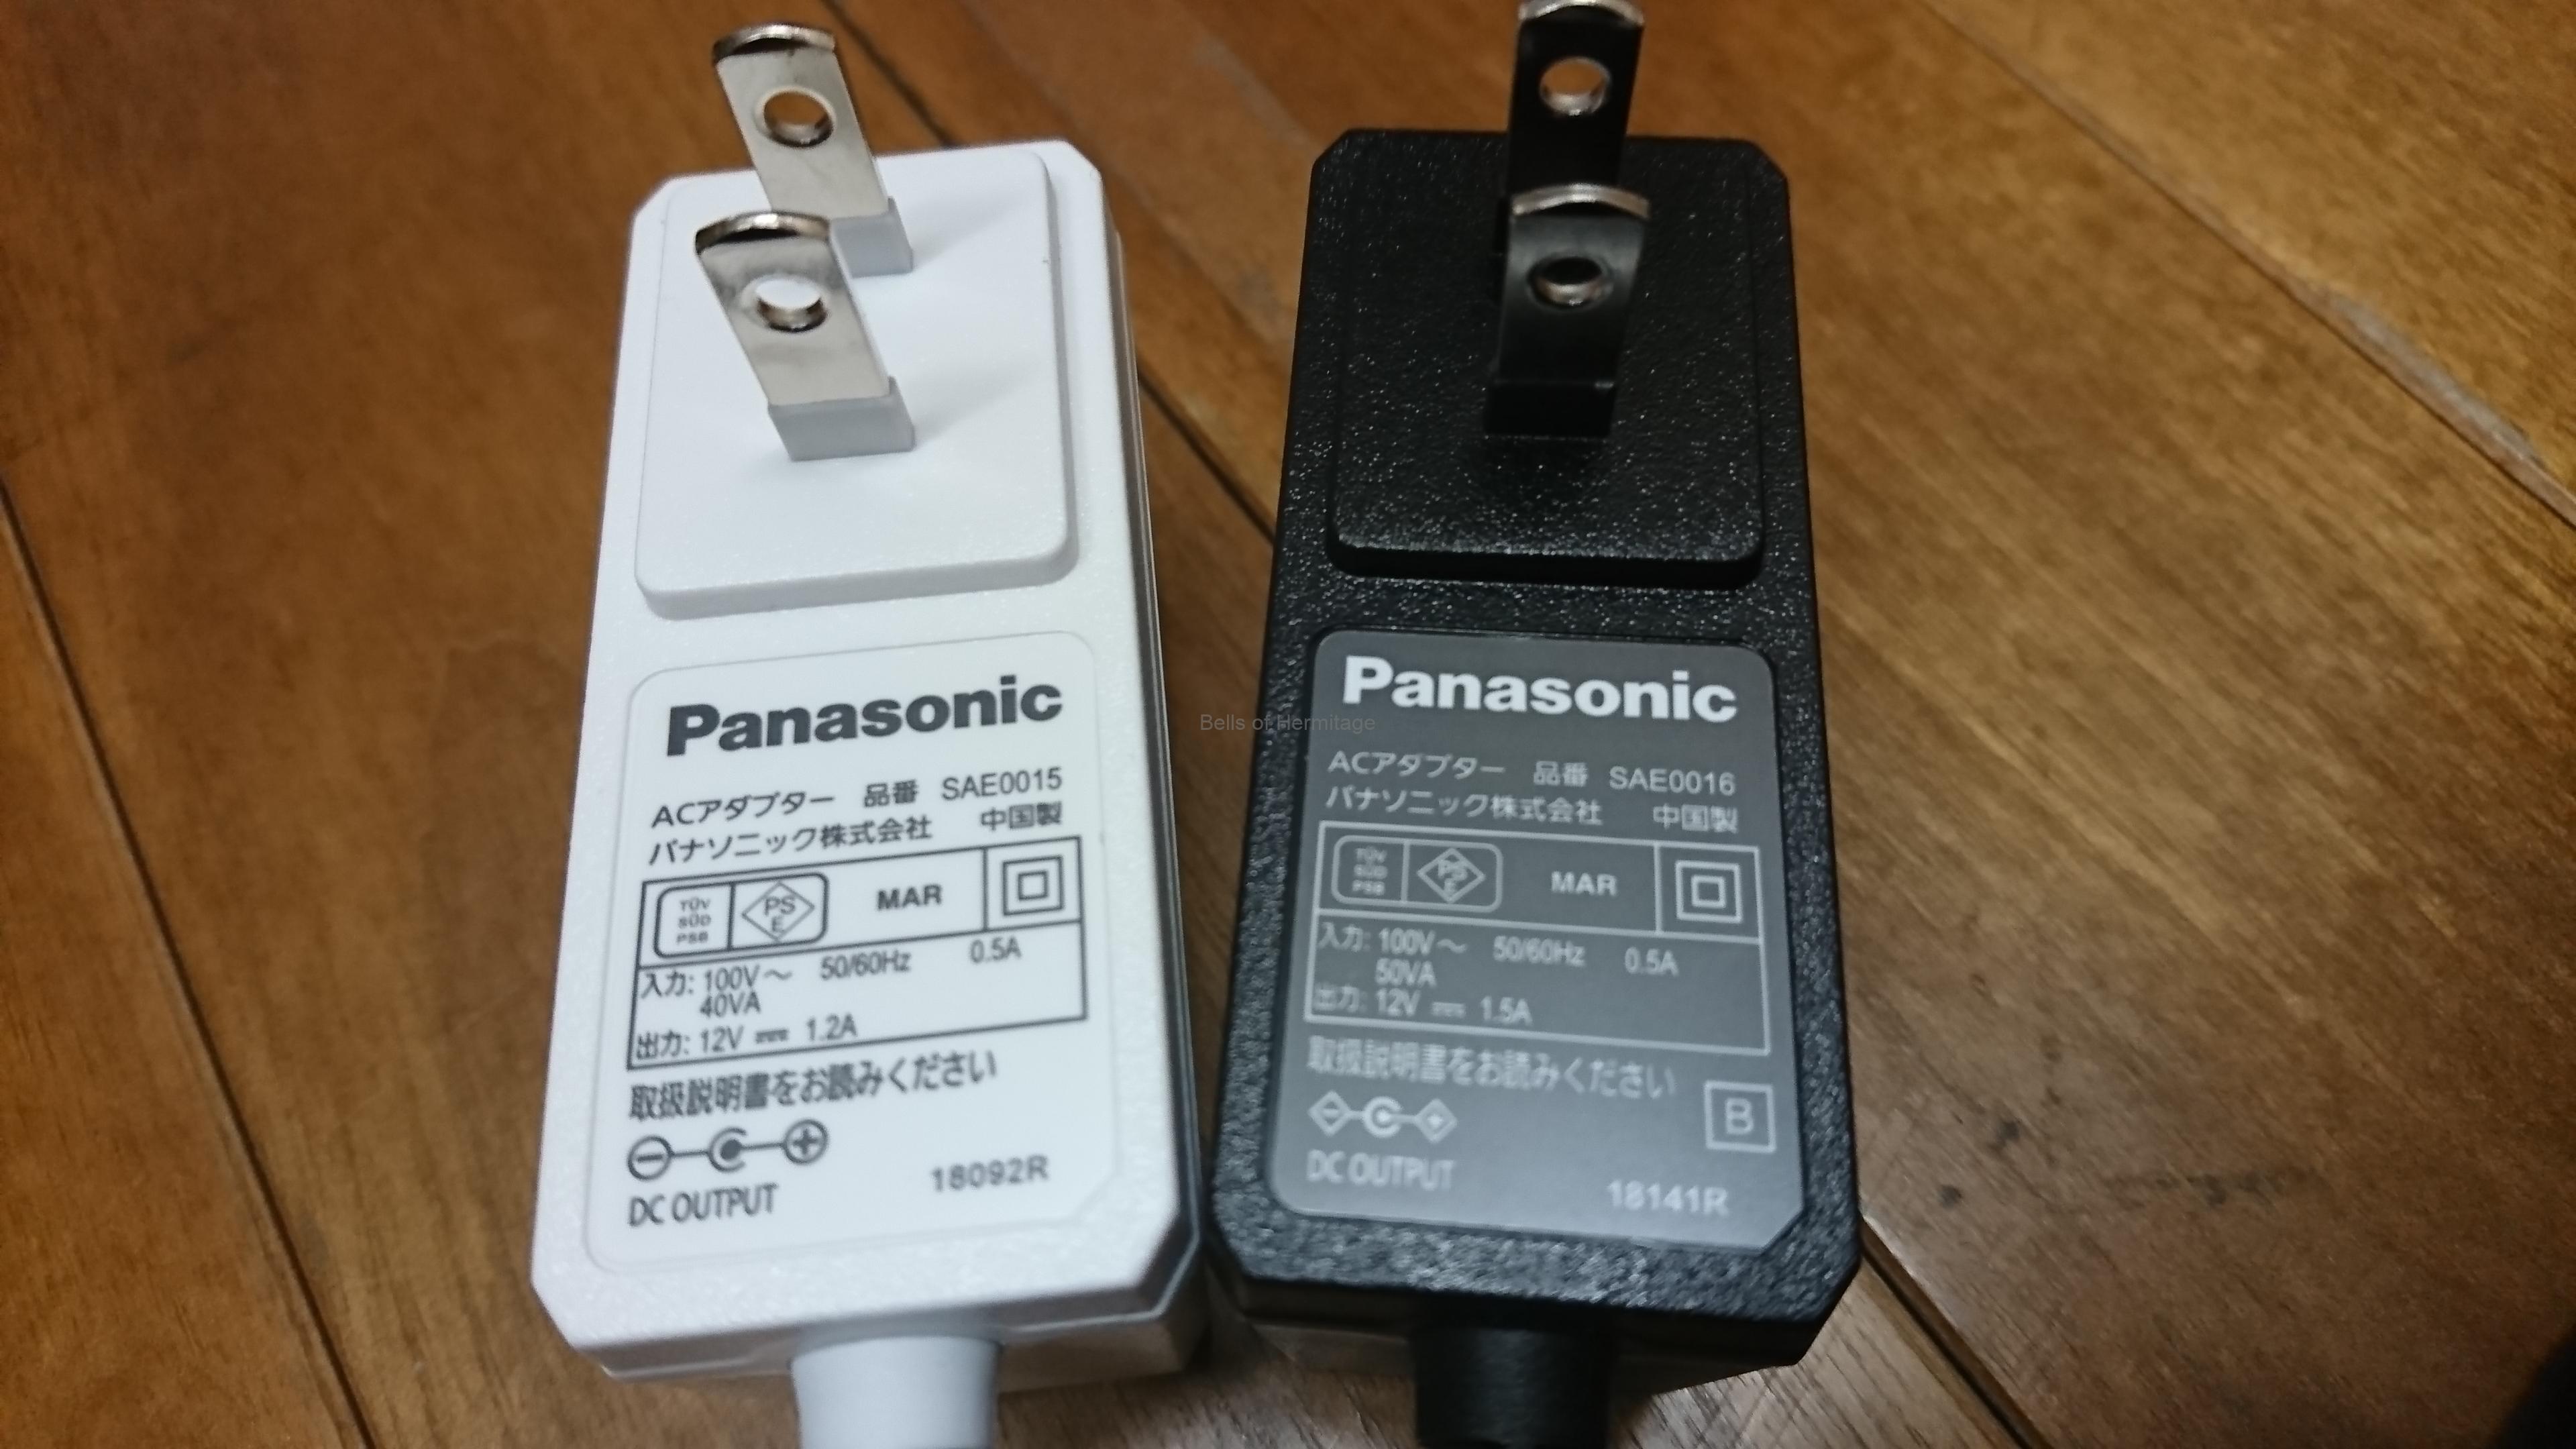 Panasonic プライベートビエラ UN-10E8-Wの購入(2)導入編 | Bells of 